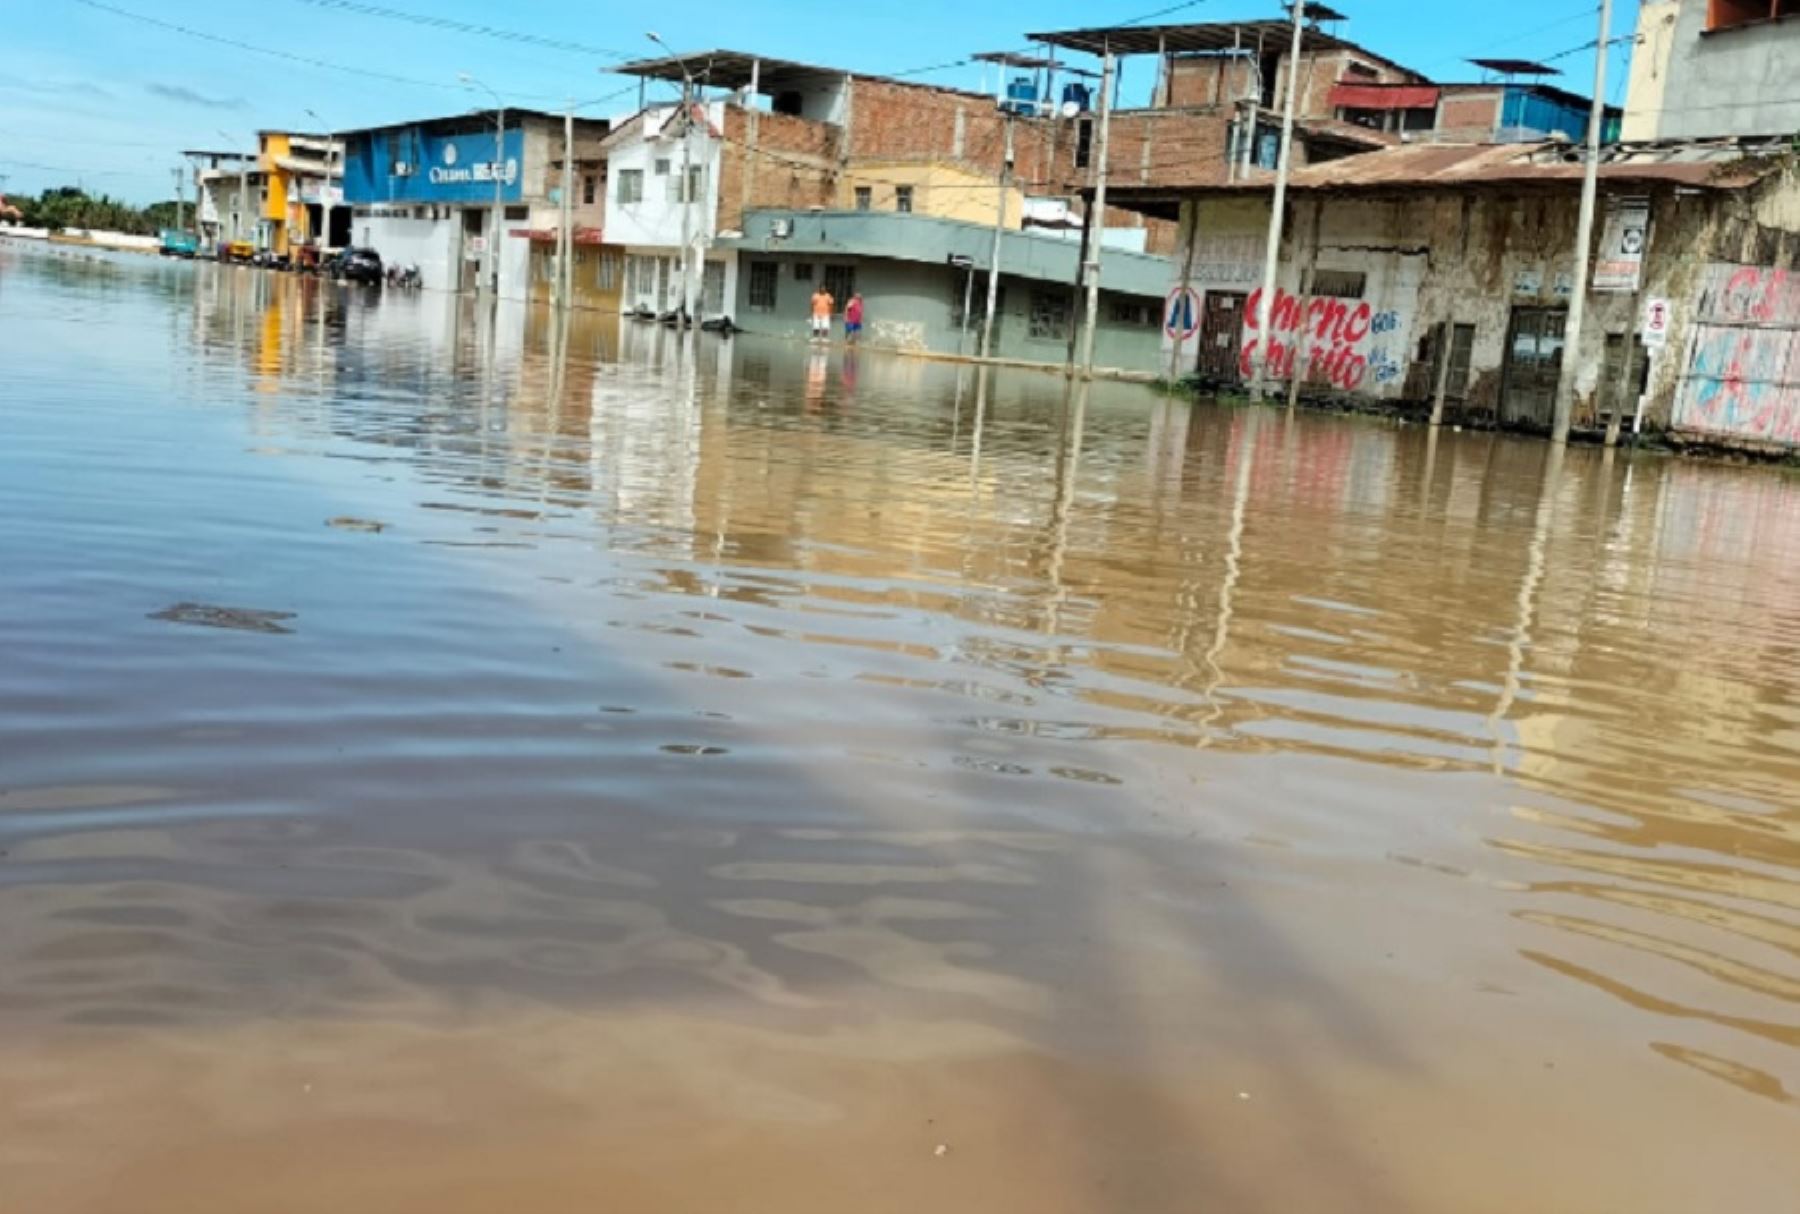 Más de 500 hectáreas de cultivo resultaron inundadas tras el desborde del río Tumbes que hoy alcanzó un caudal de 1,833.38 metros cúbicos por segundo, el más alto registrado hasta ahora.